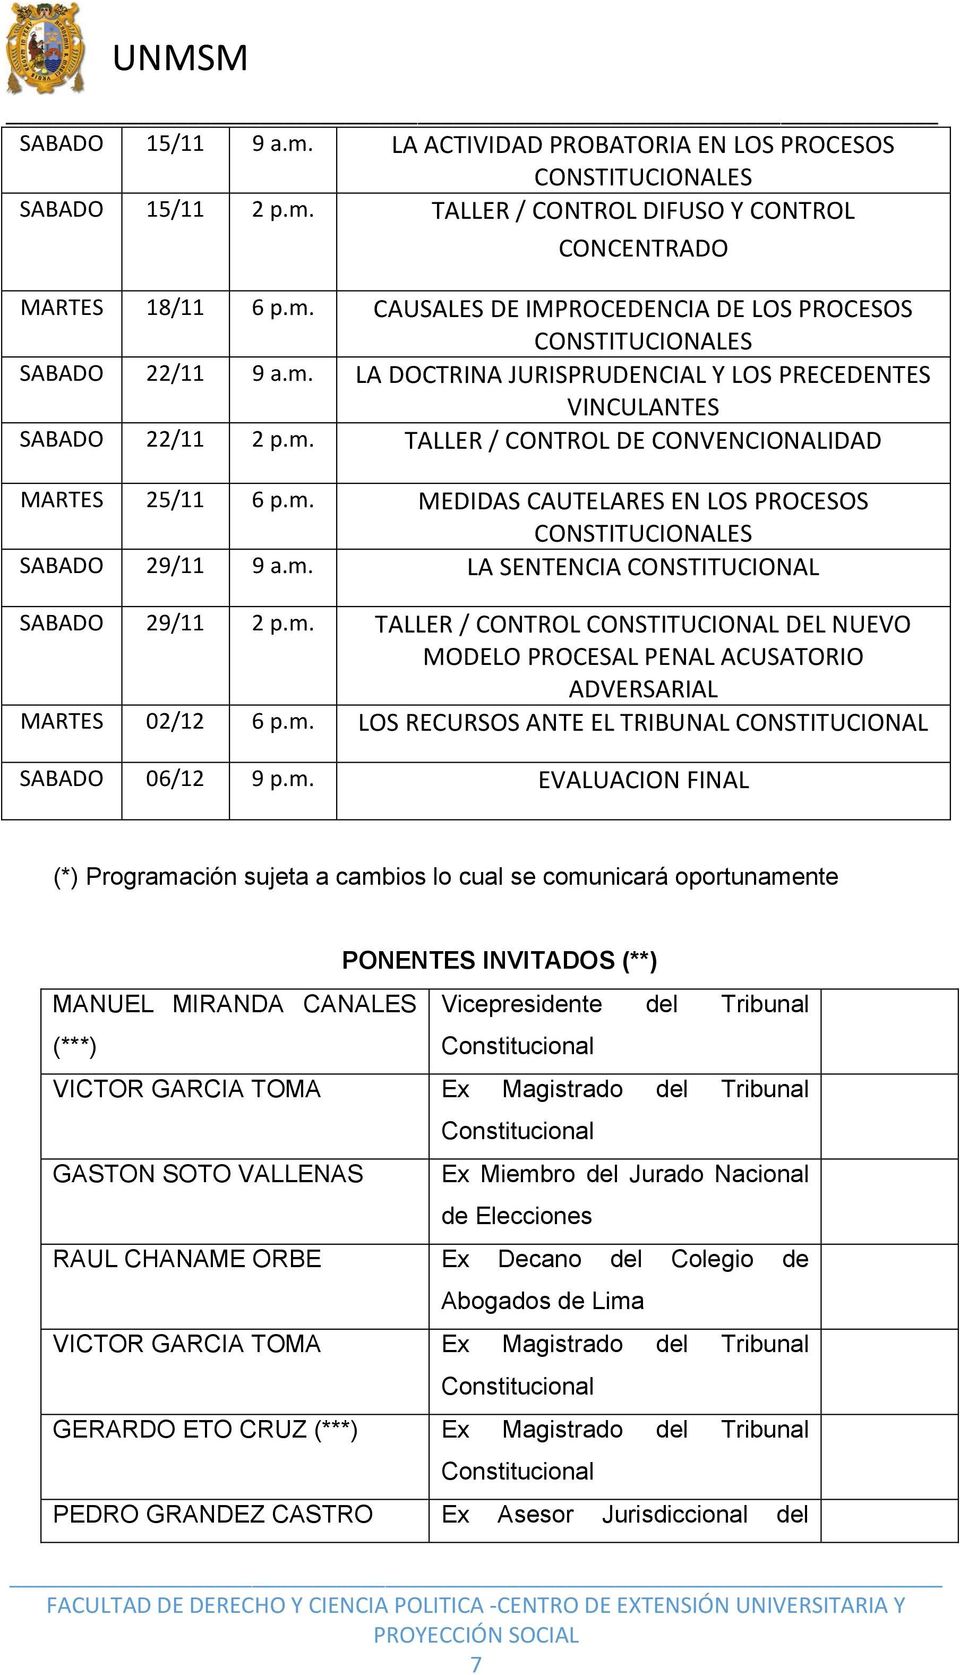 m. LA SENTENCIA CONSTITUCIONAL SABADO 29/11 2 p.m. TALLER / CONTROL CONSTITUCIONAL DEL NUEVO MODELO PROCESAL PENAL ACUSATORIO ADVERSARIAL MARTES 02/12 6 p.m. LOS RECURSOS ANTE EL TRIBUNAL CONSTITUCIONAL SABADO 06/12 9 p.